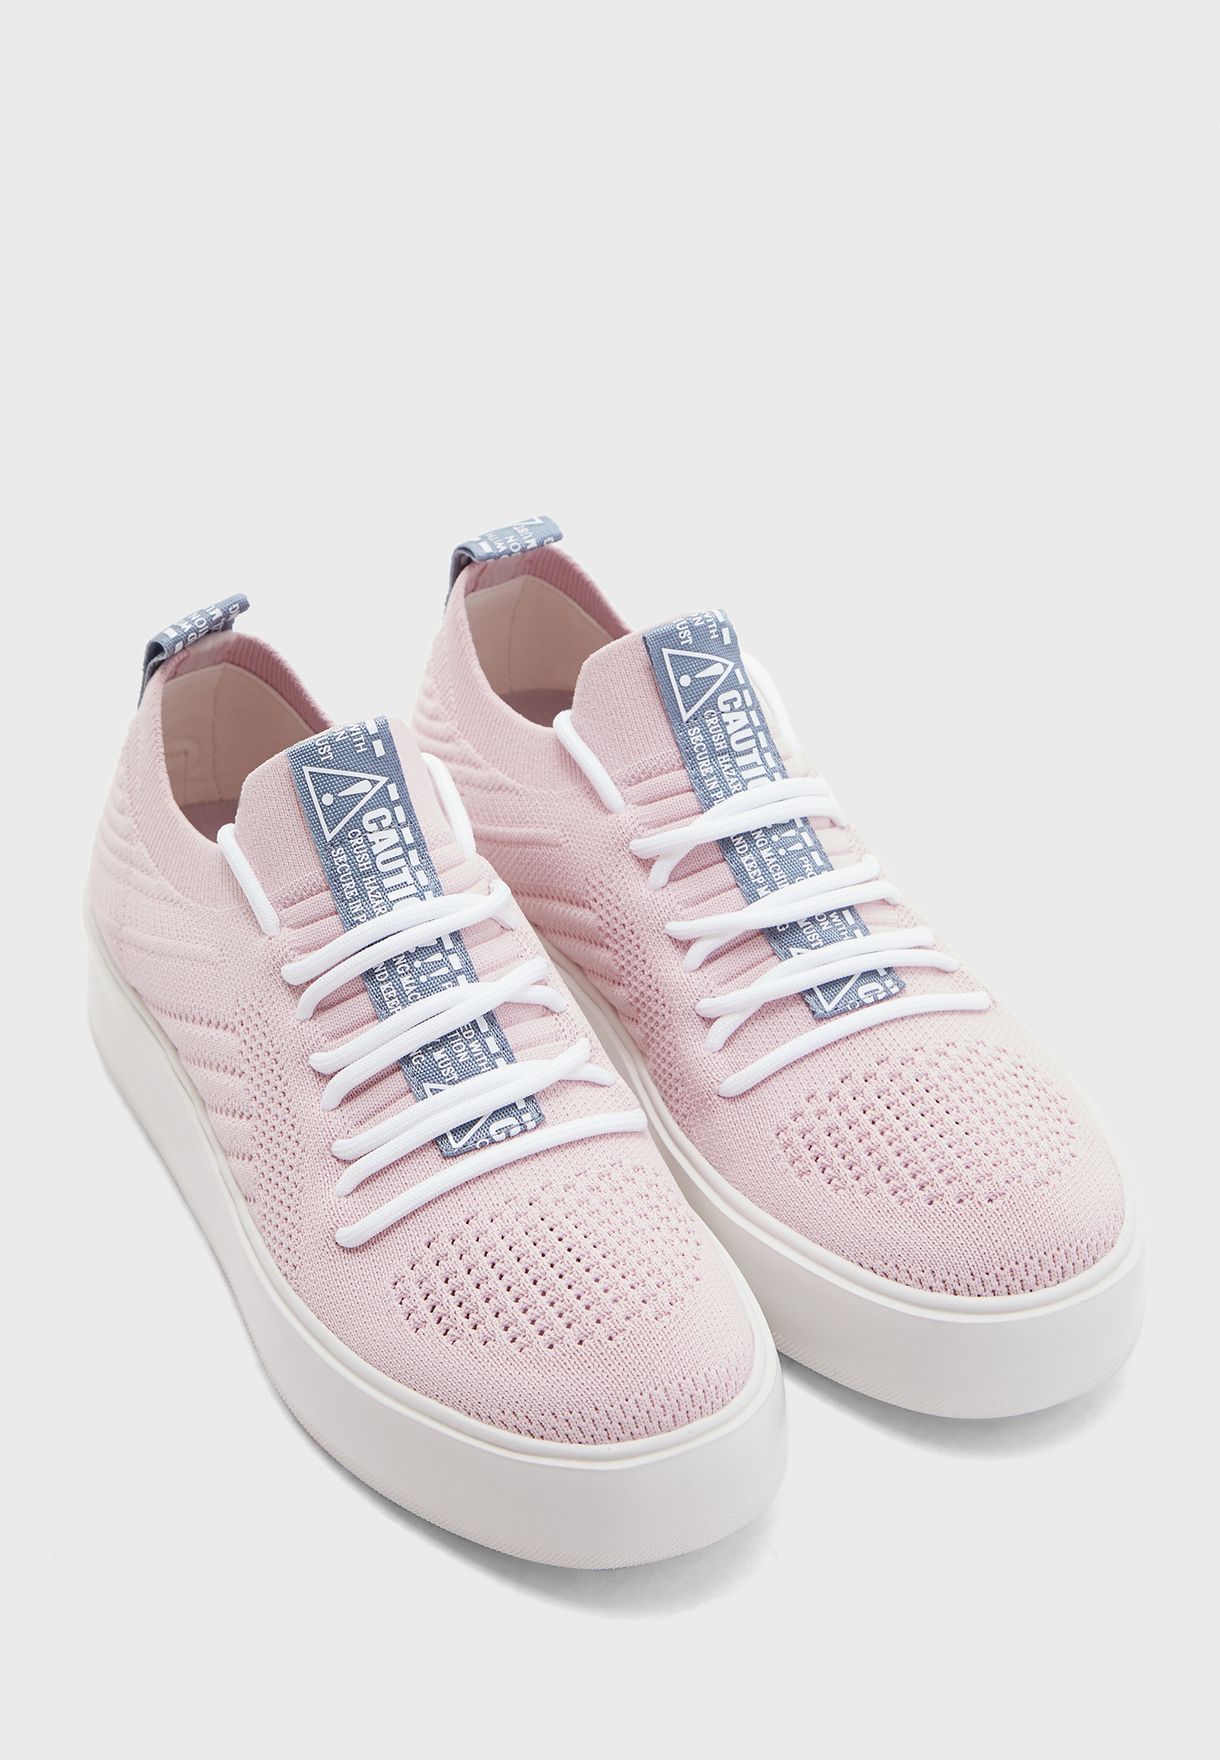 steve madden pink tennis shoes